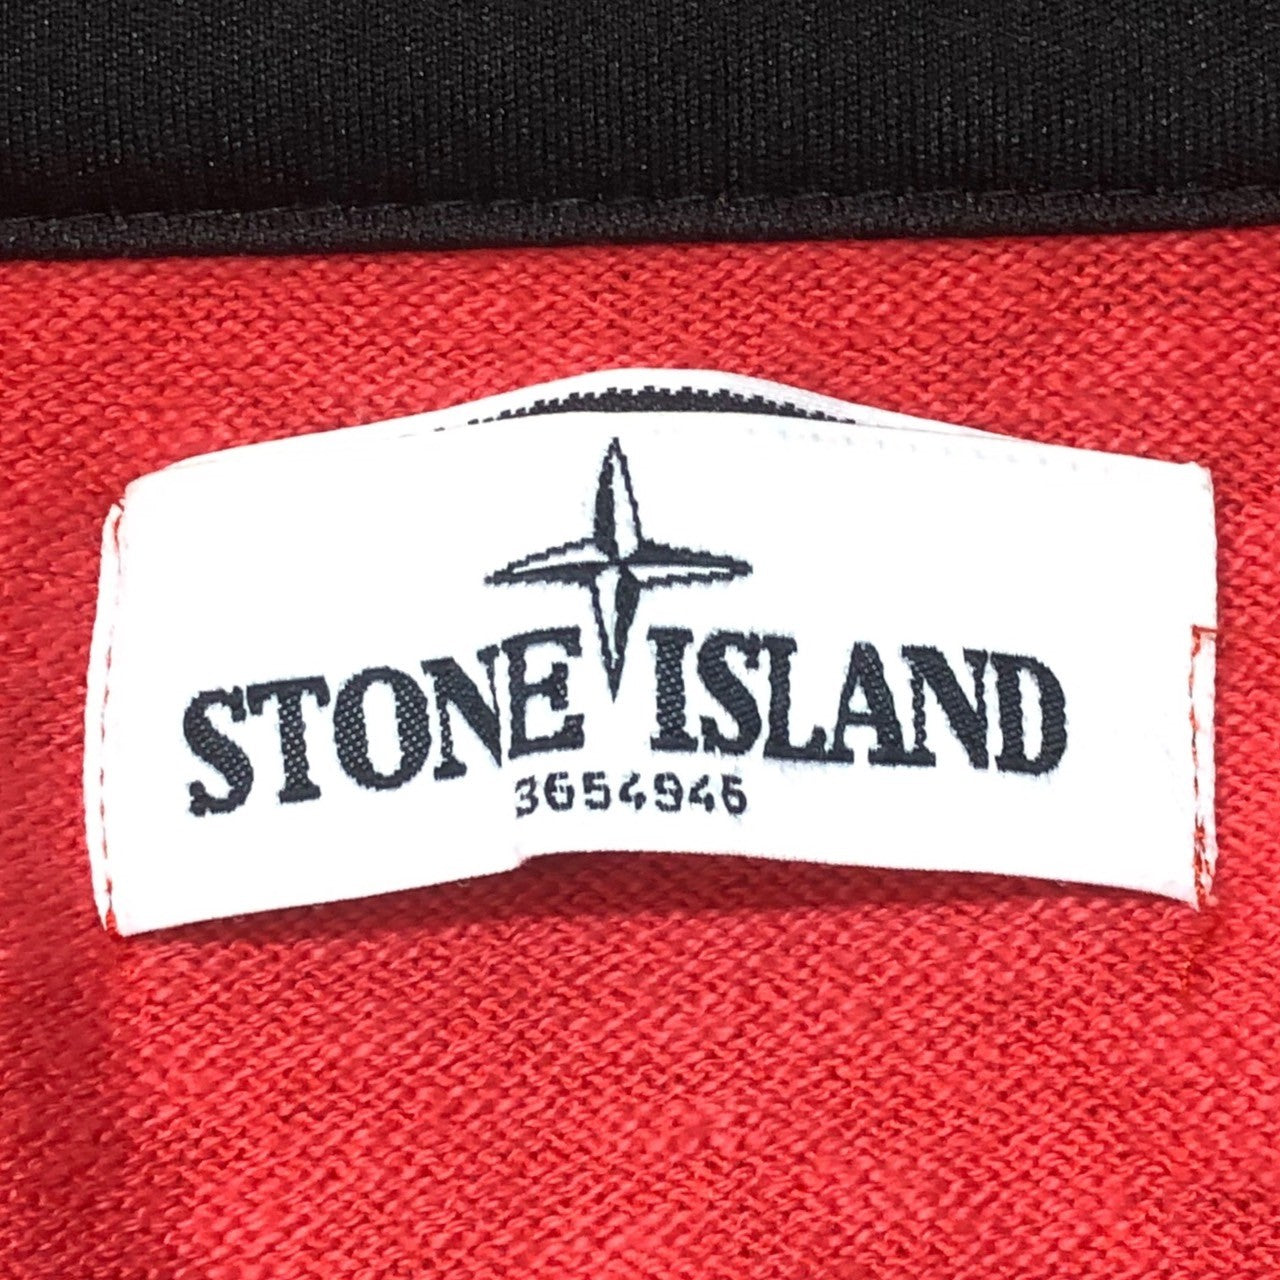 STONE ISLAND(ストーンアイランド) 13SS Zip up knit jacket ジップアップ ニット ジャケット パーカー マウンテンパーカー 5815529B0 S レッド ワッペン